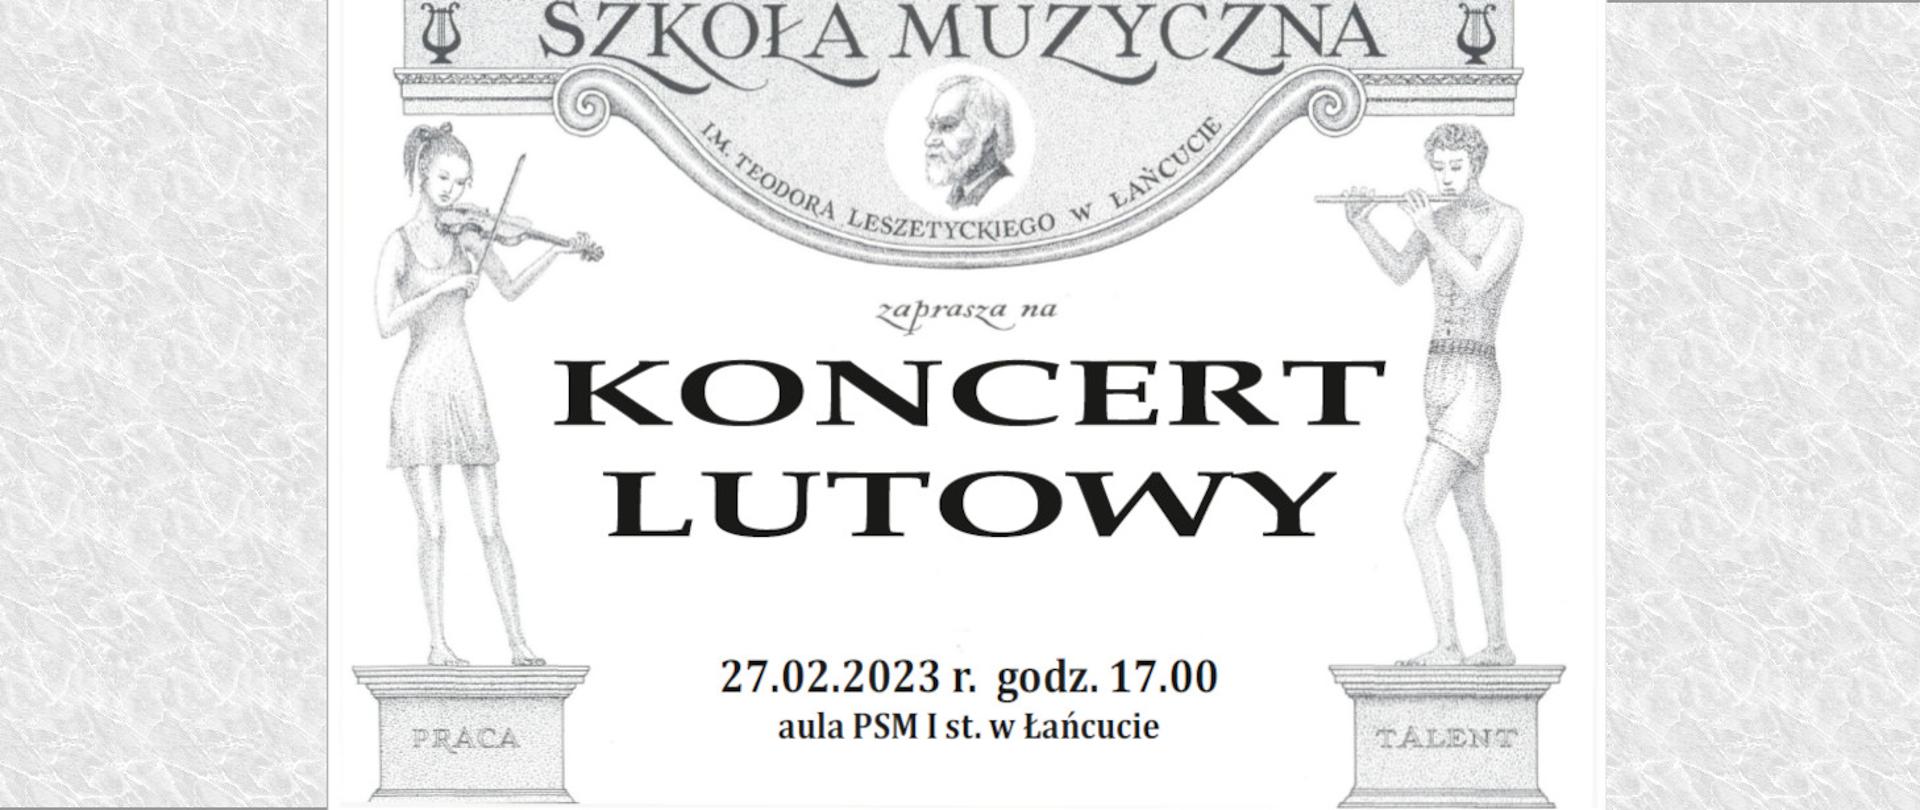 Plakat przedstawia u góry Leszetyckiego patrona szkoły, na środku ogłoszenie koncert lutowy 27 luty godz. 17